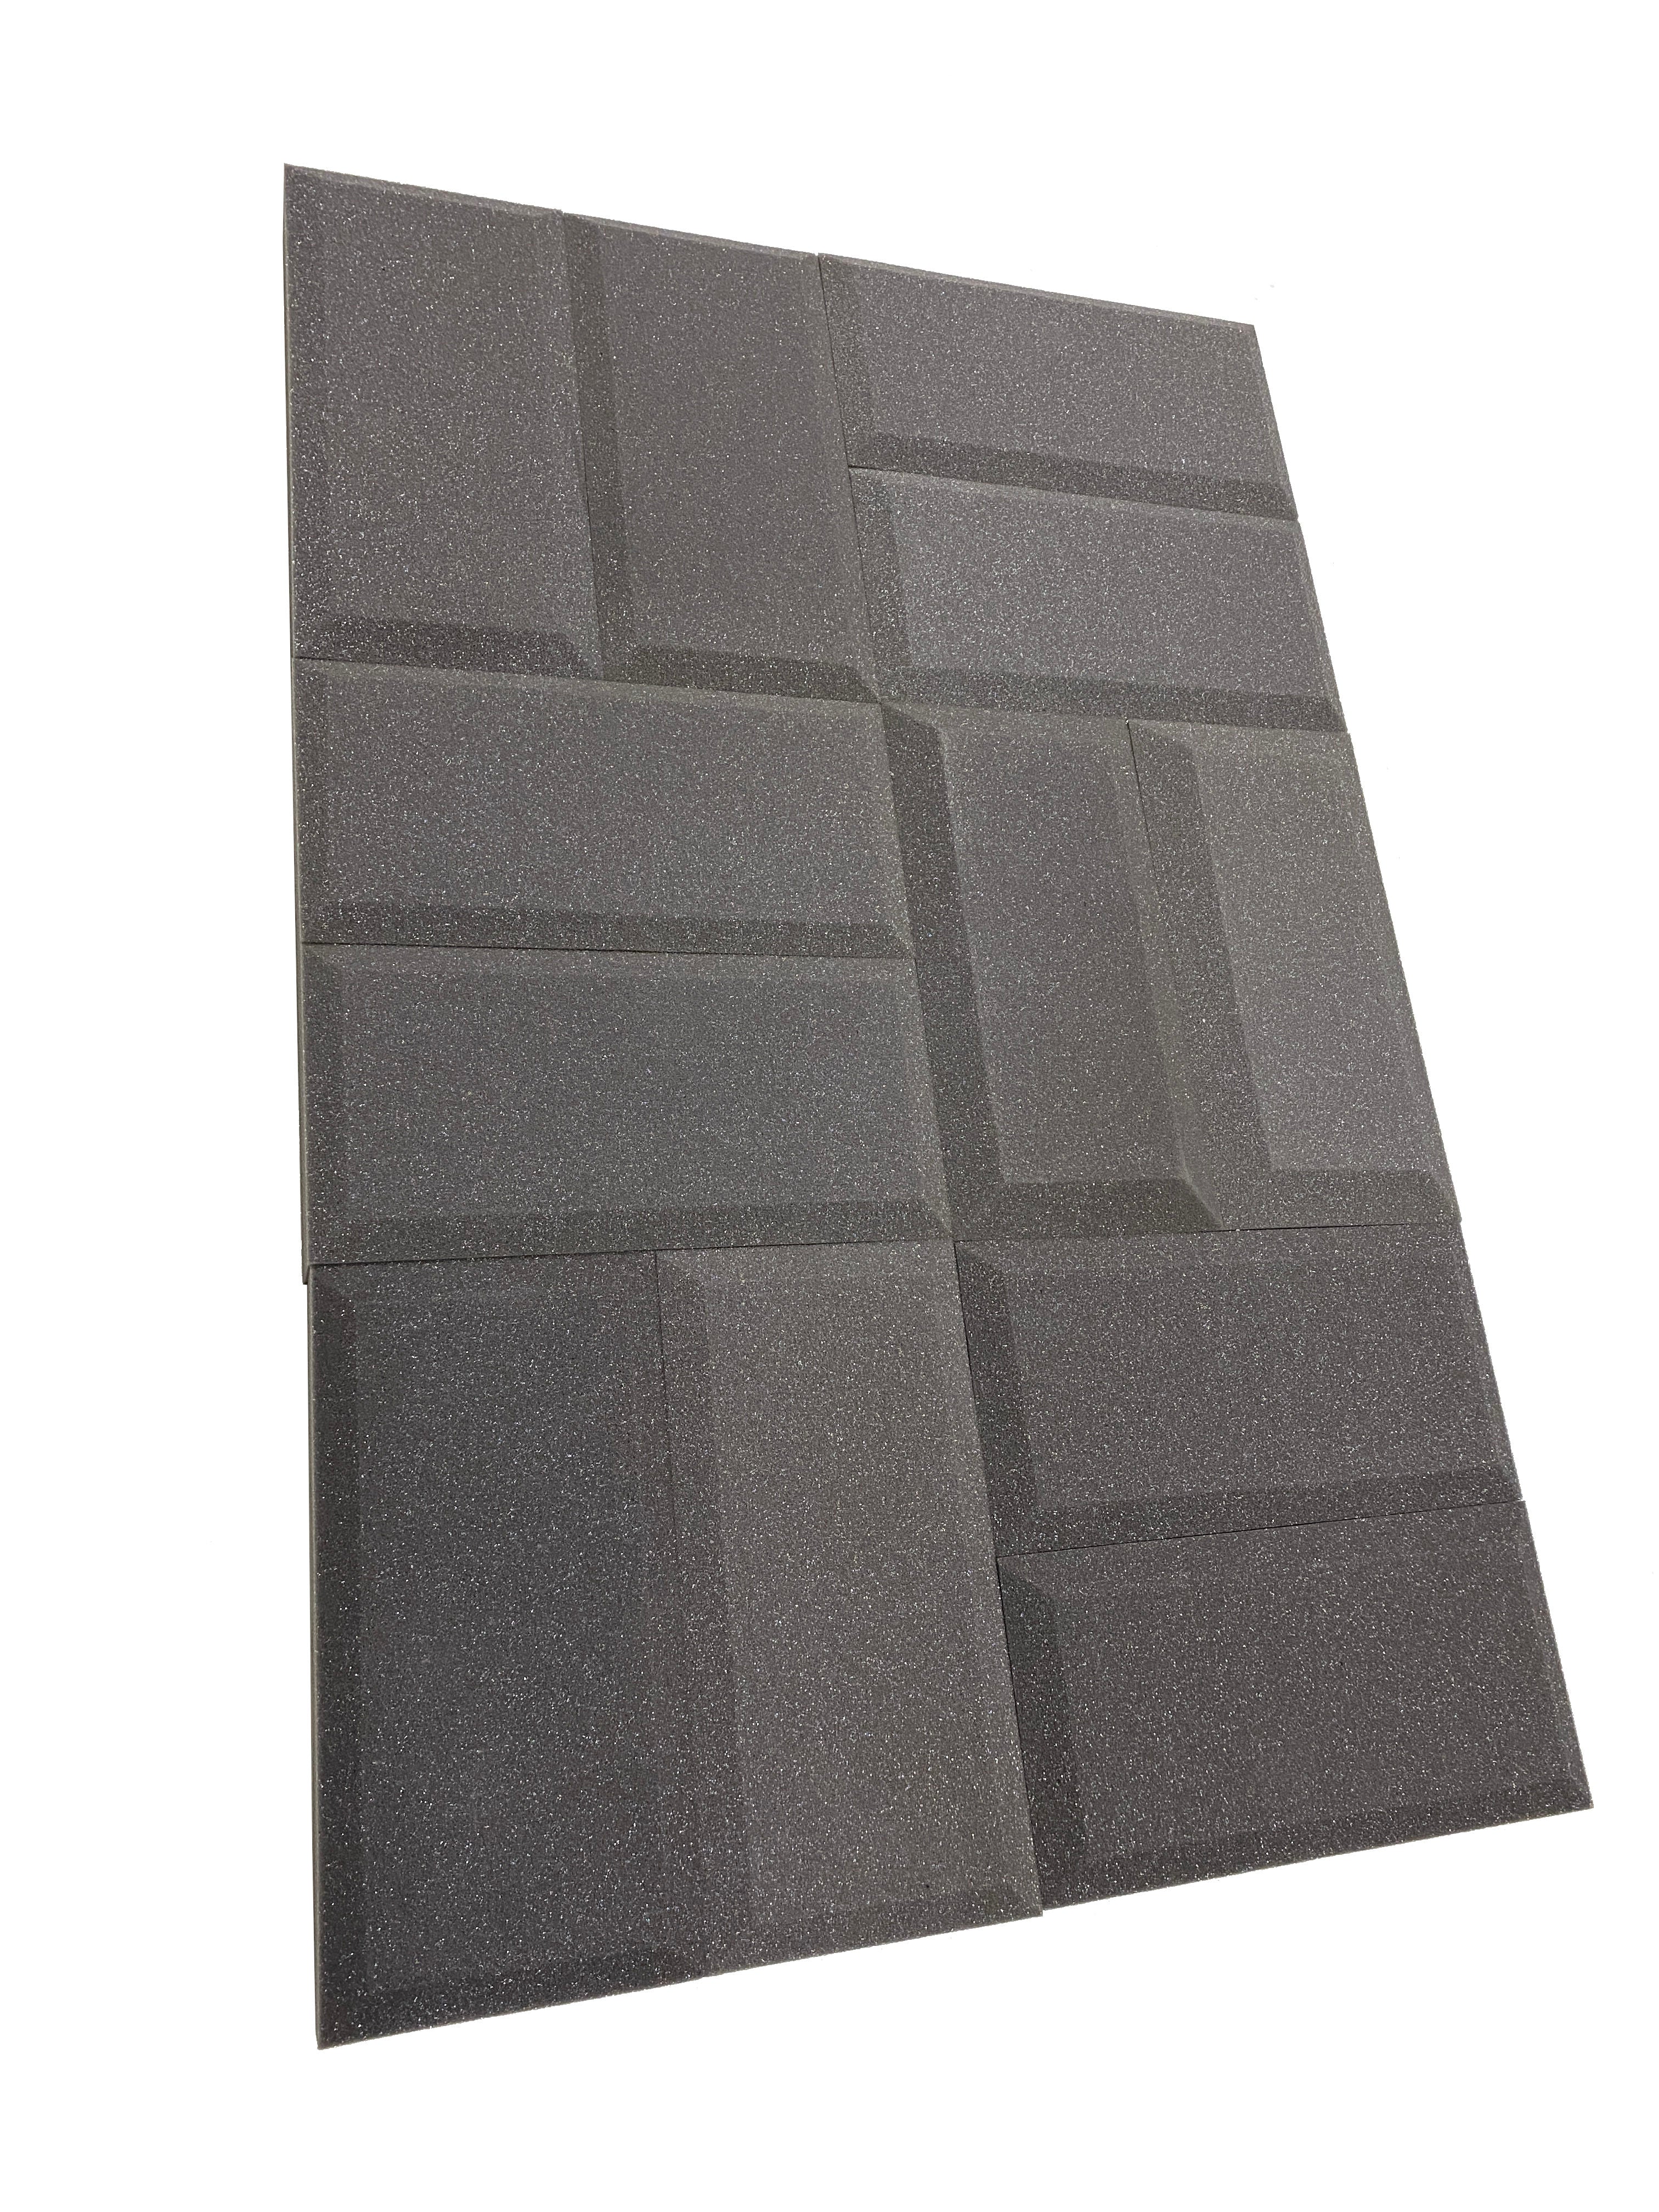 Kaufen mittelgrau Subway Acoustic Studio Foam Tile Pack – 24 Fliesen, 1,1 m² Abdeckung